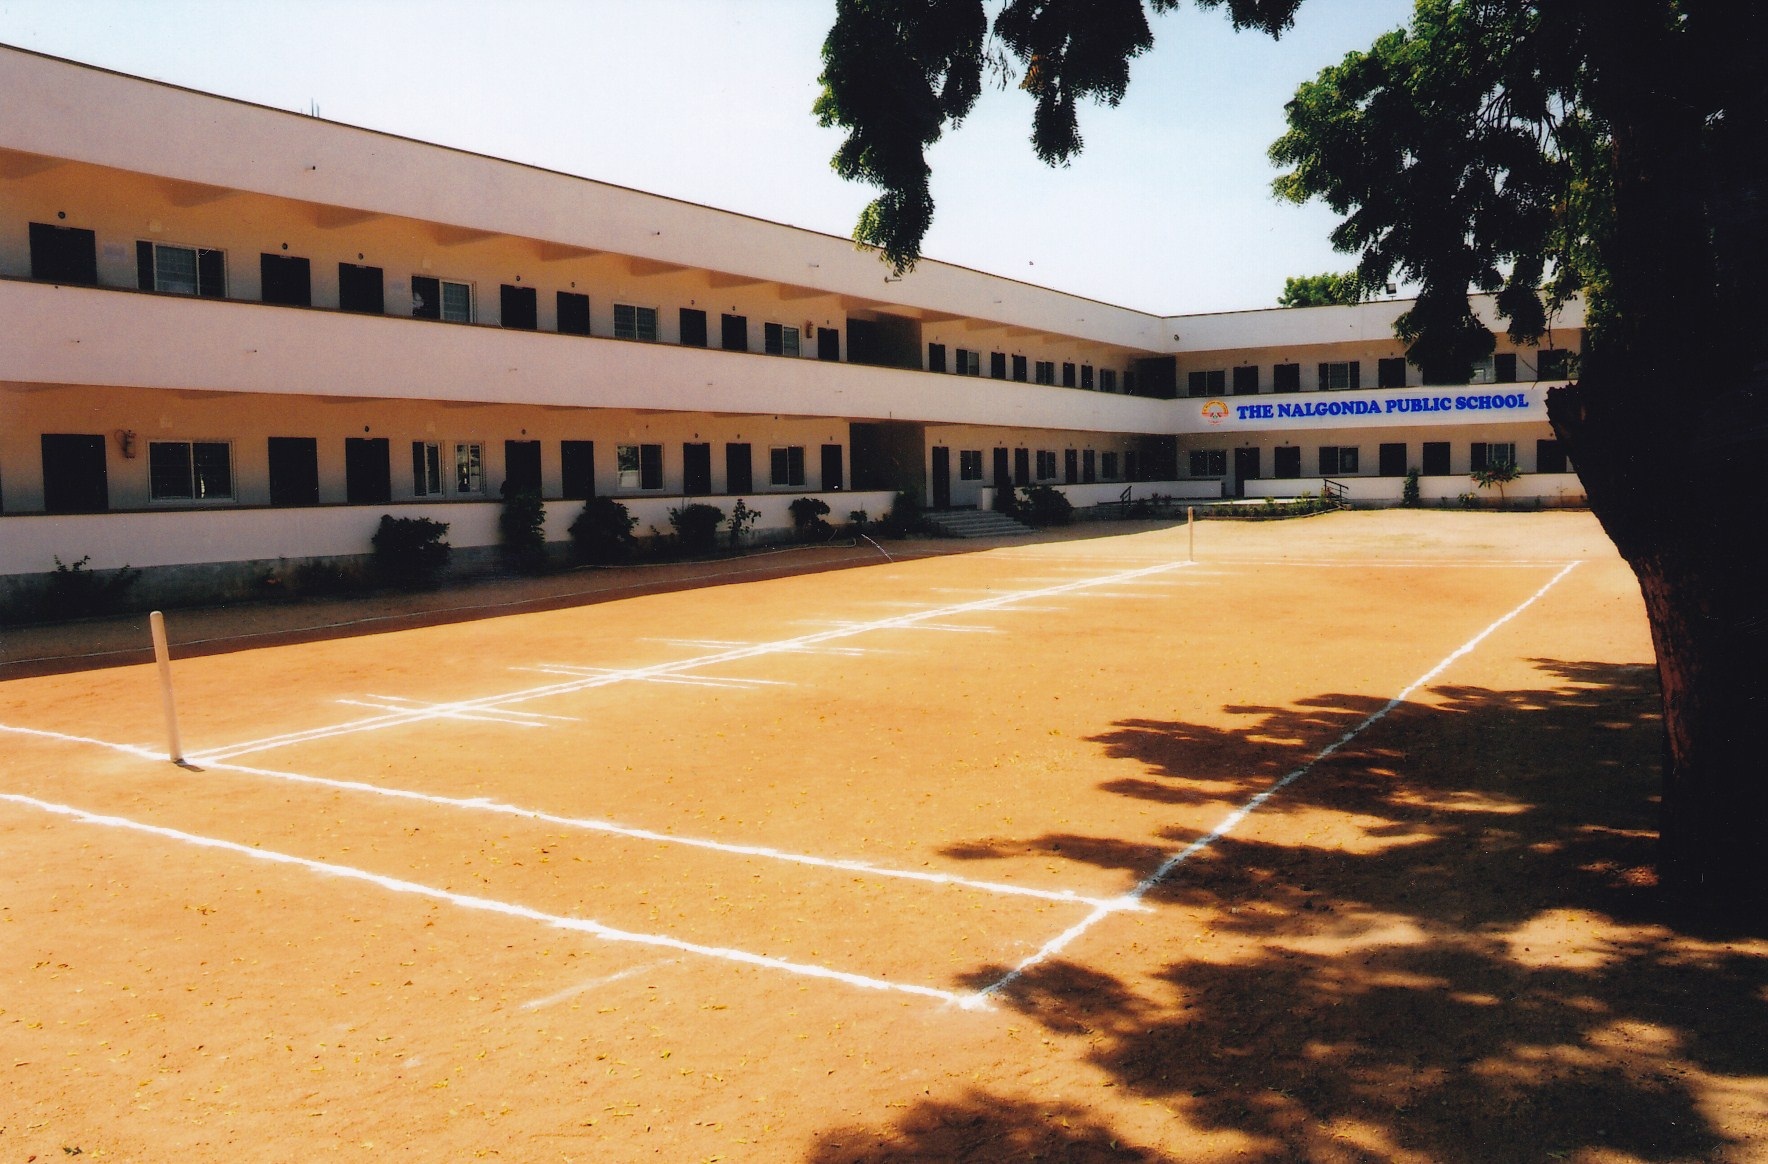 Nalgonda Public School